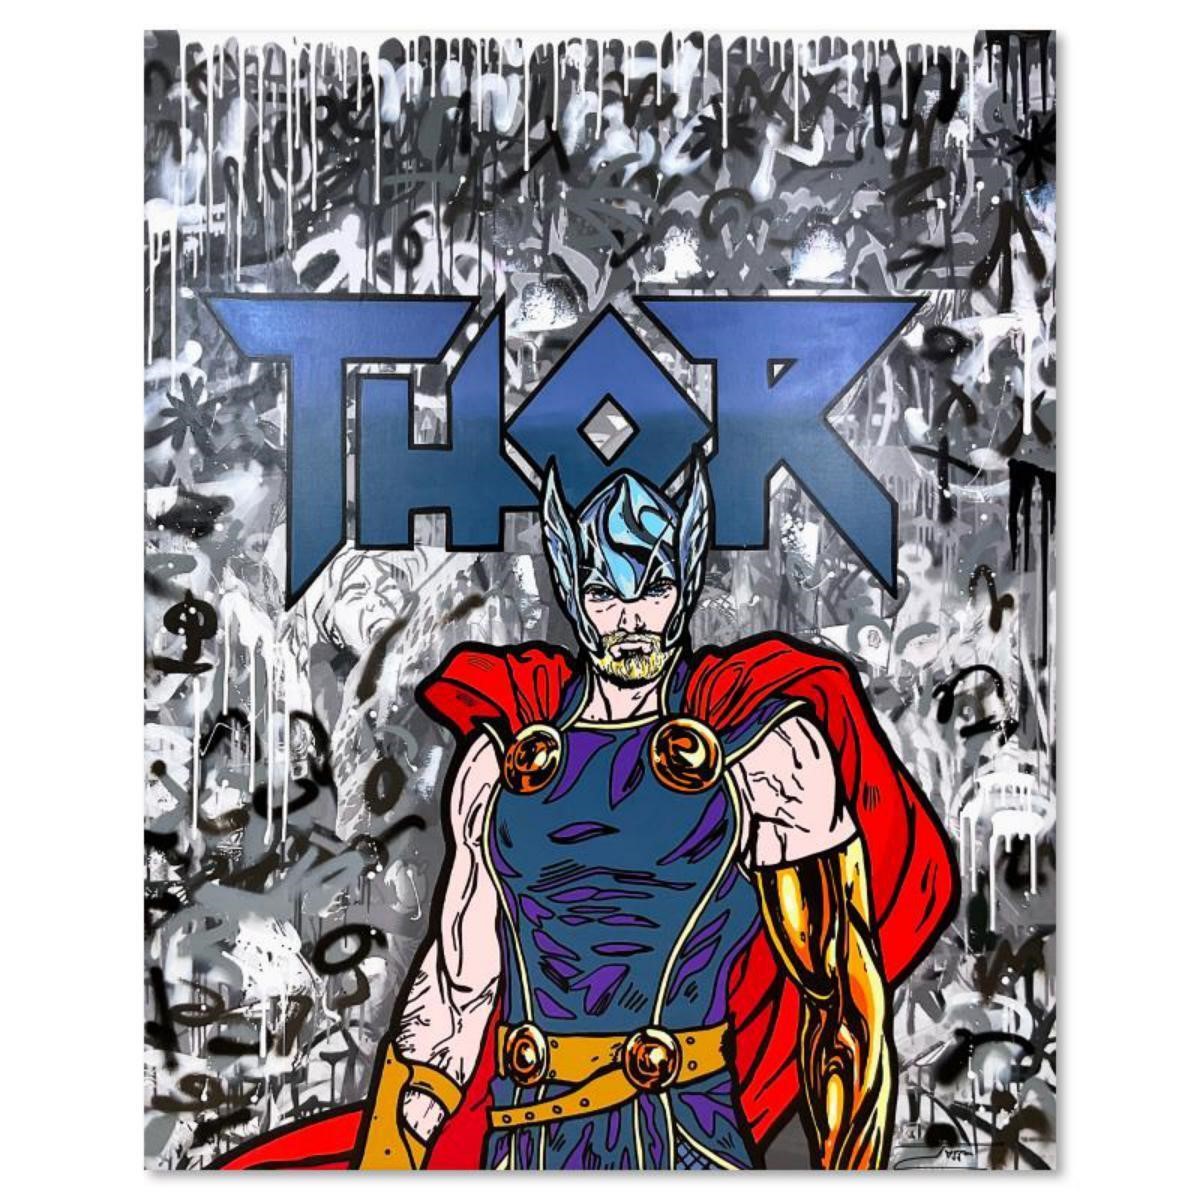 Jozza, "Hey Thor" Unique Mixed Media on Canvas, Ha